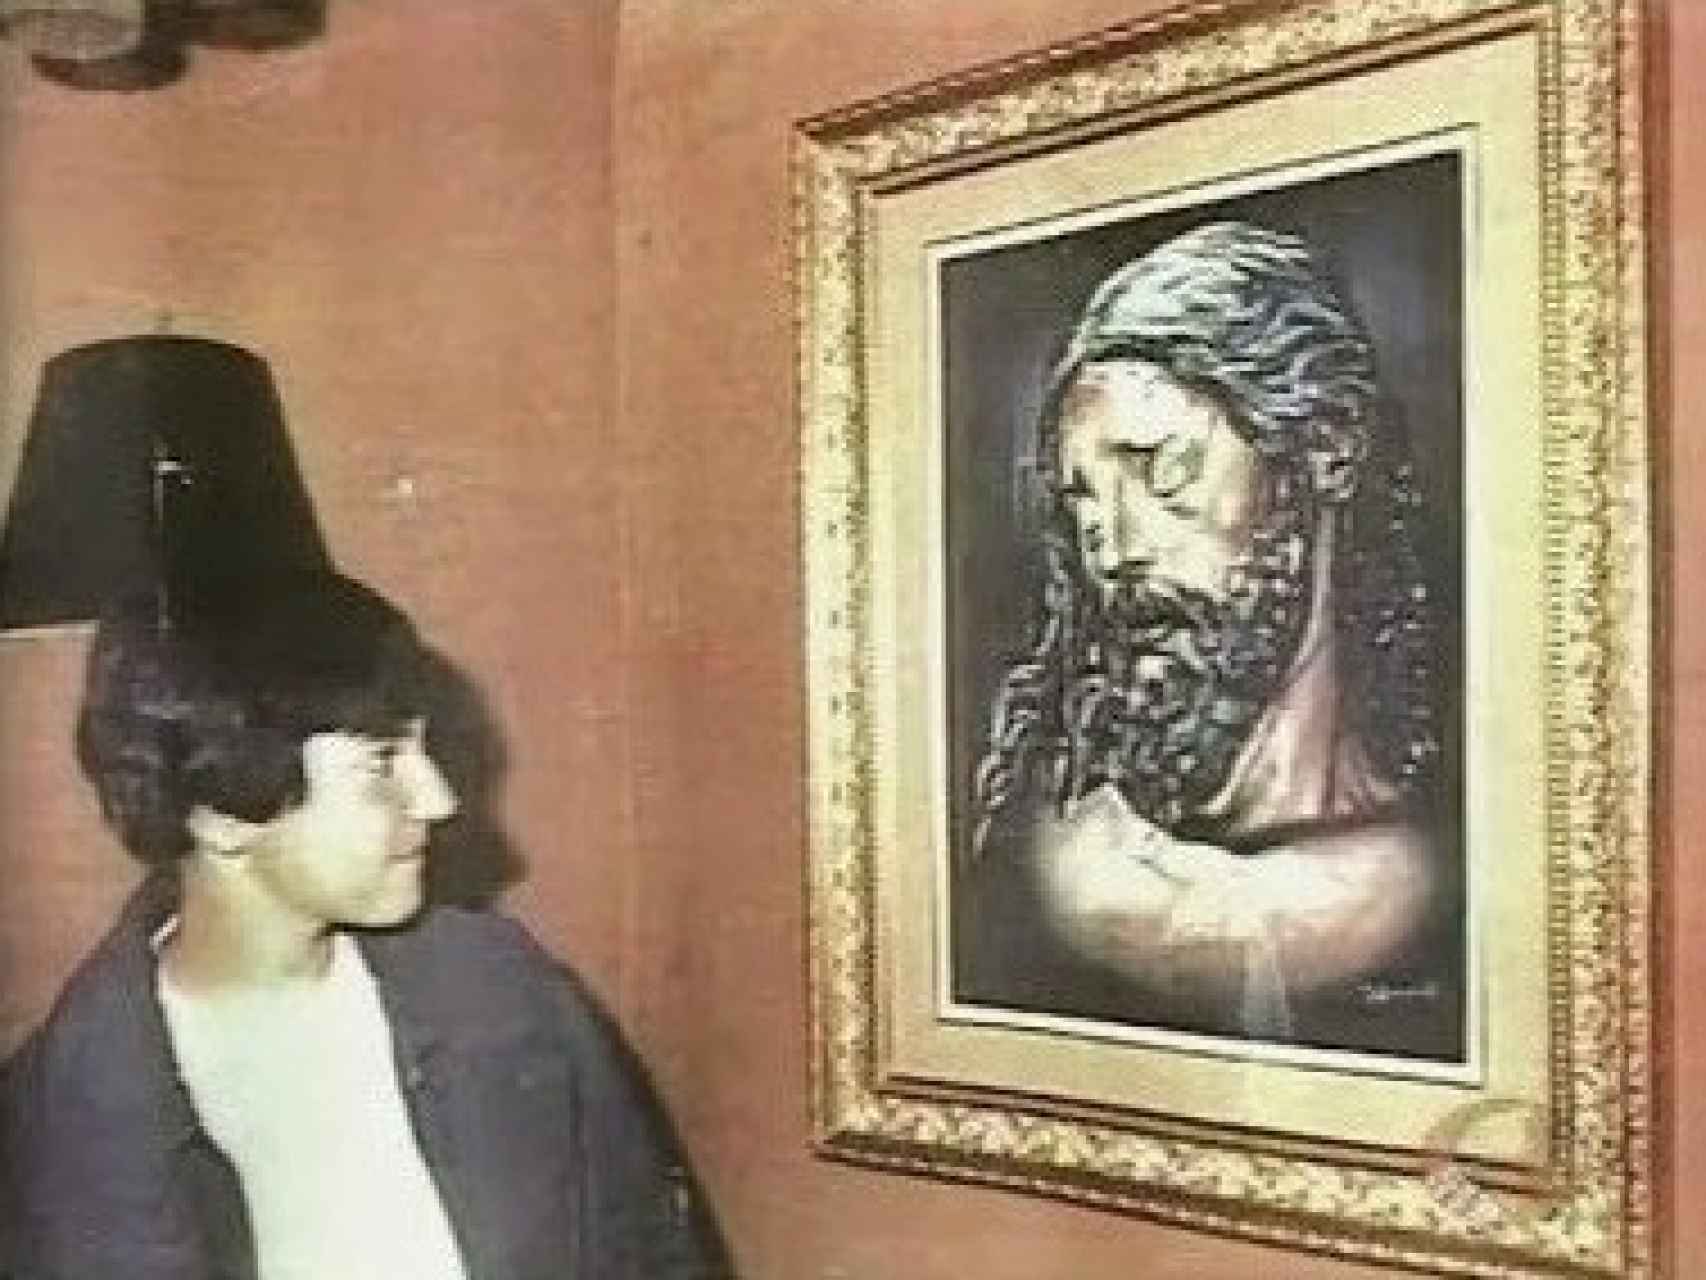 David era un amante de la pintura. Desapareció el día que iba a ver una exposición en la que participaba.